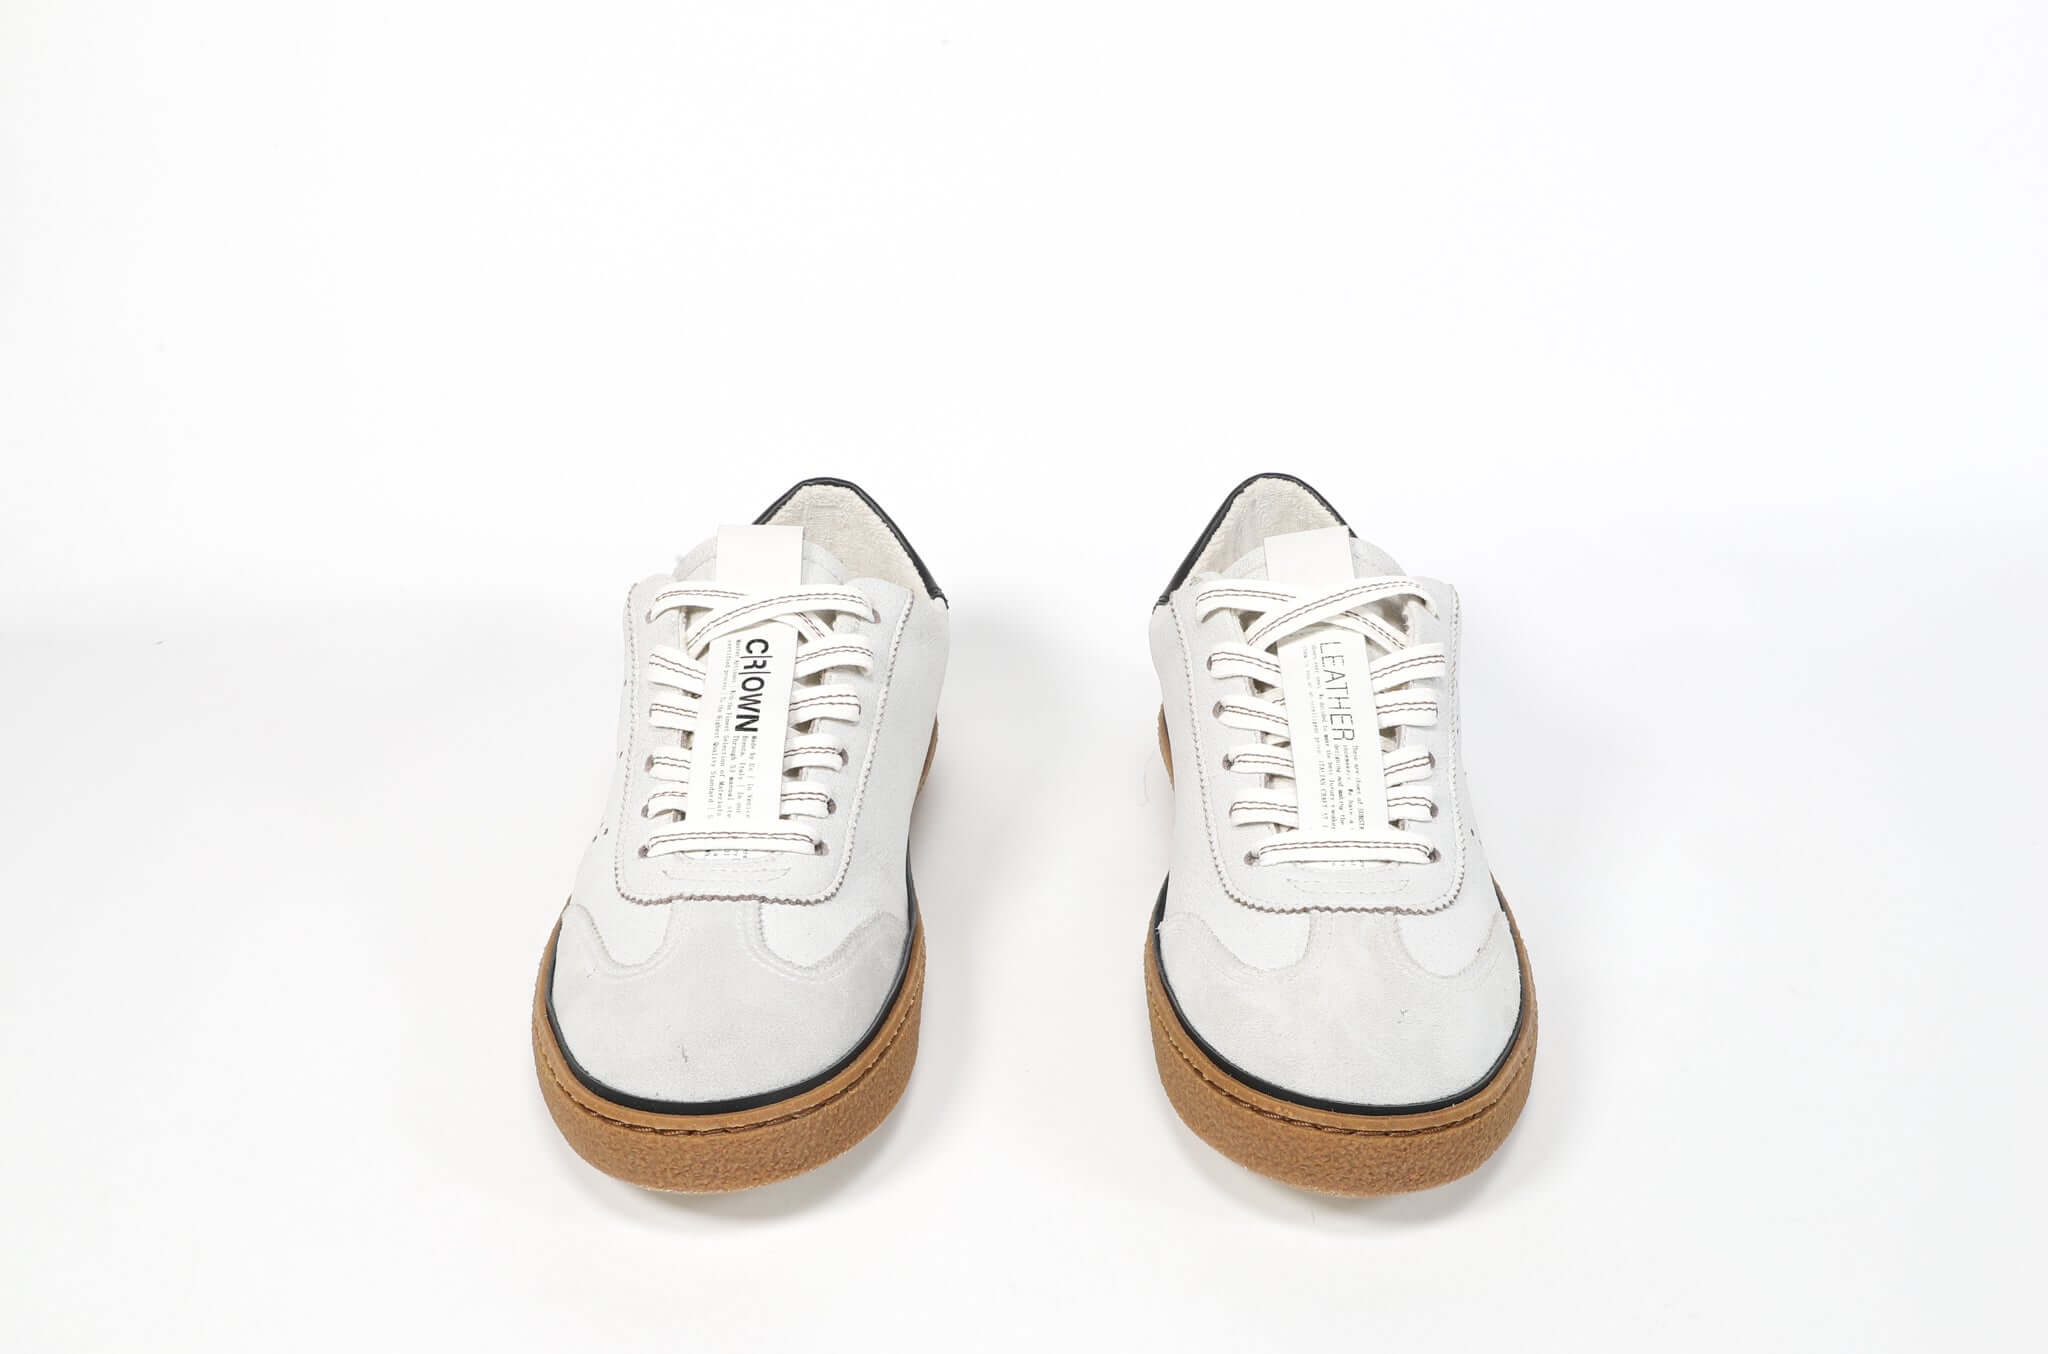 Vue de face de la chaussure basse rétro sneaker en blanc et gris avec des détails bleu marine et le logo perforé de la couronne sur la tige. Tige en cuir et semelle en caoutchouc recyclé couleur miel.